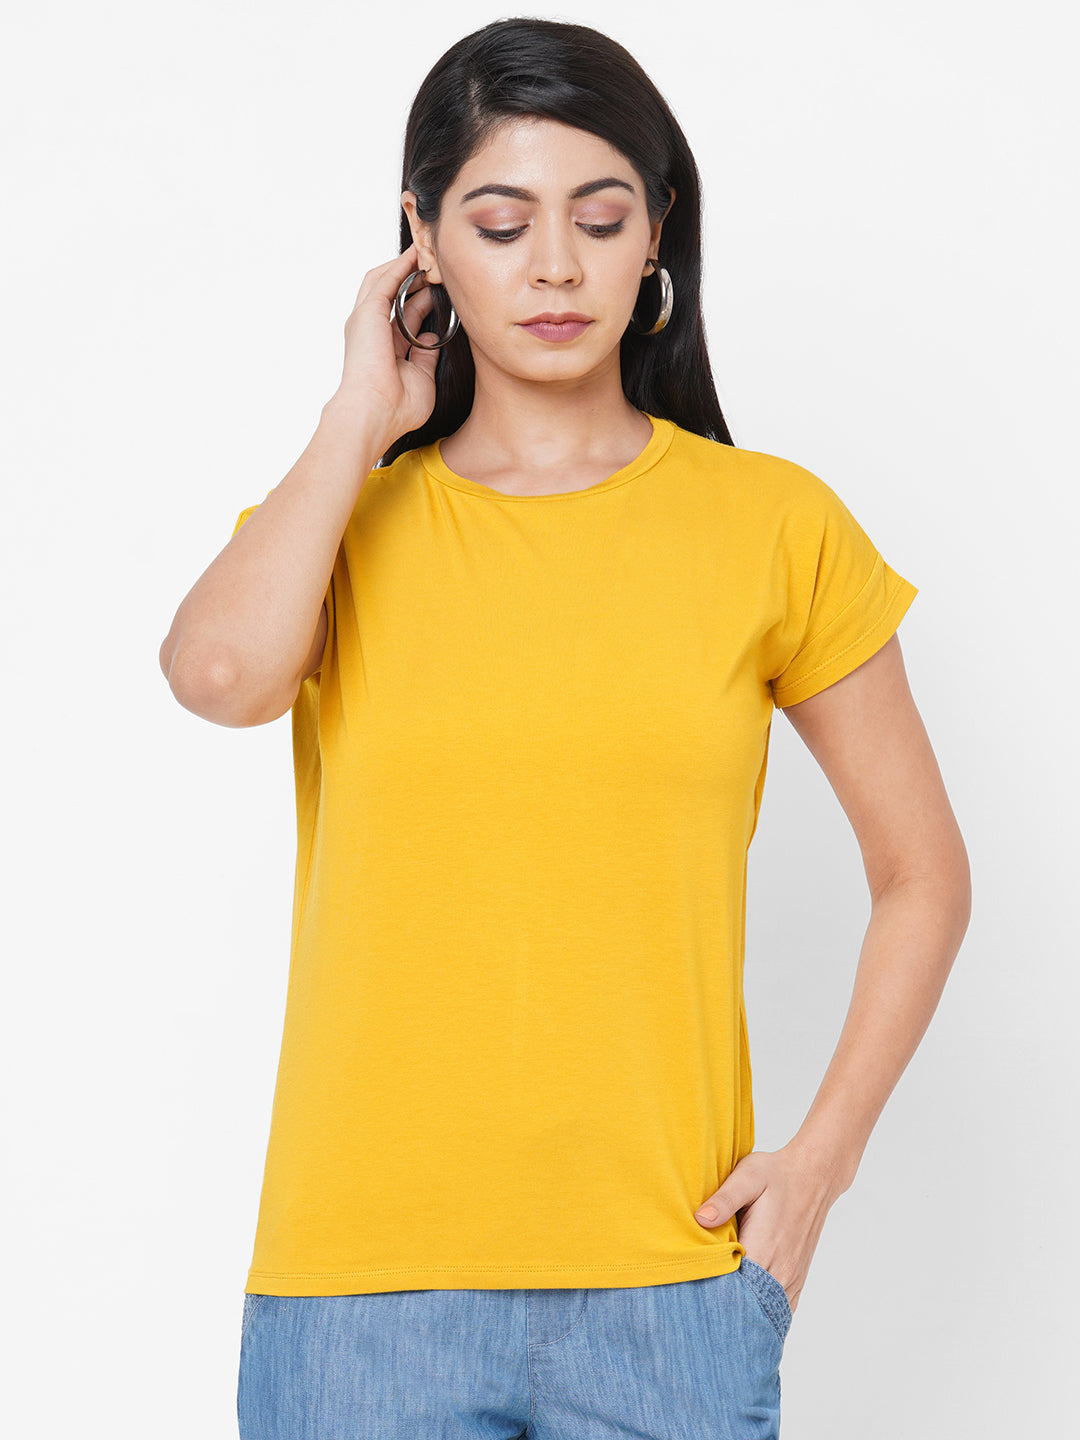 Womens Bamboo Cotton Elastane Yellow Regular Fit Tshirt